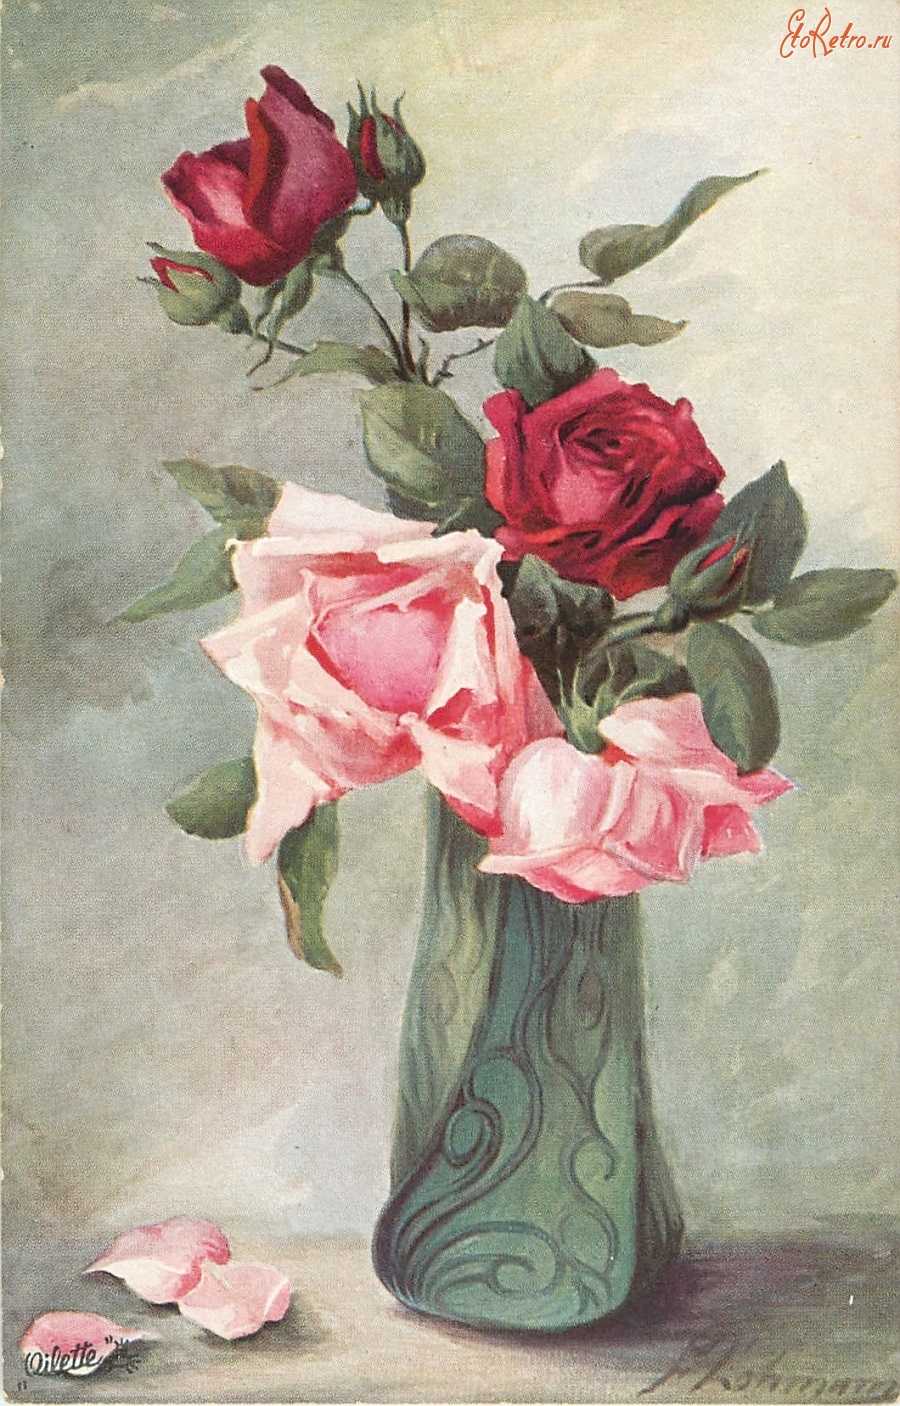 Ретро открытки - Розовые и красные розы с бутонами в фигурной зелёной вазе